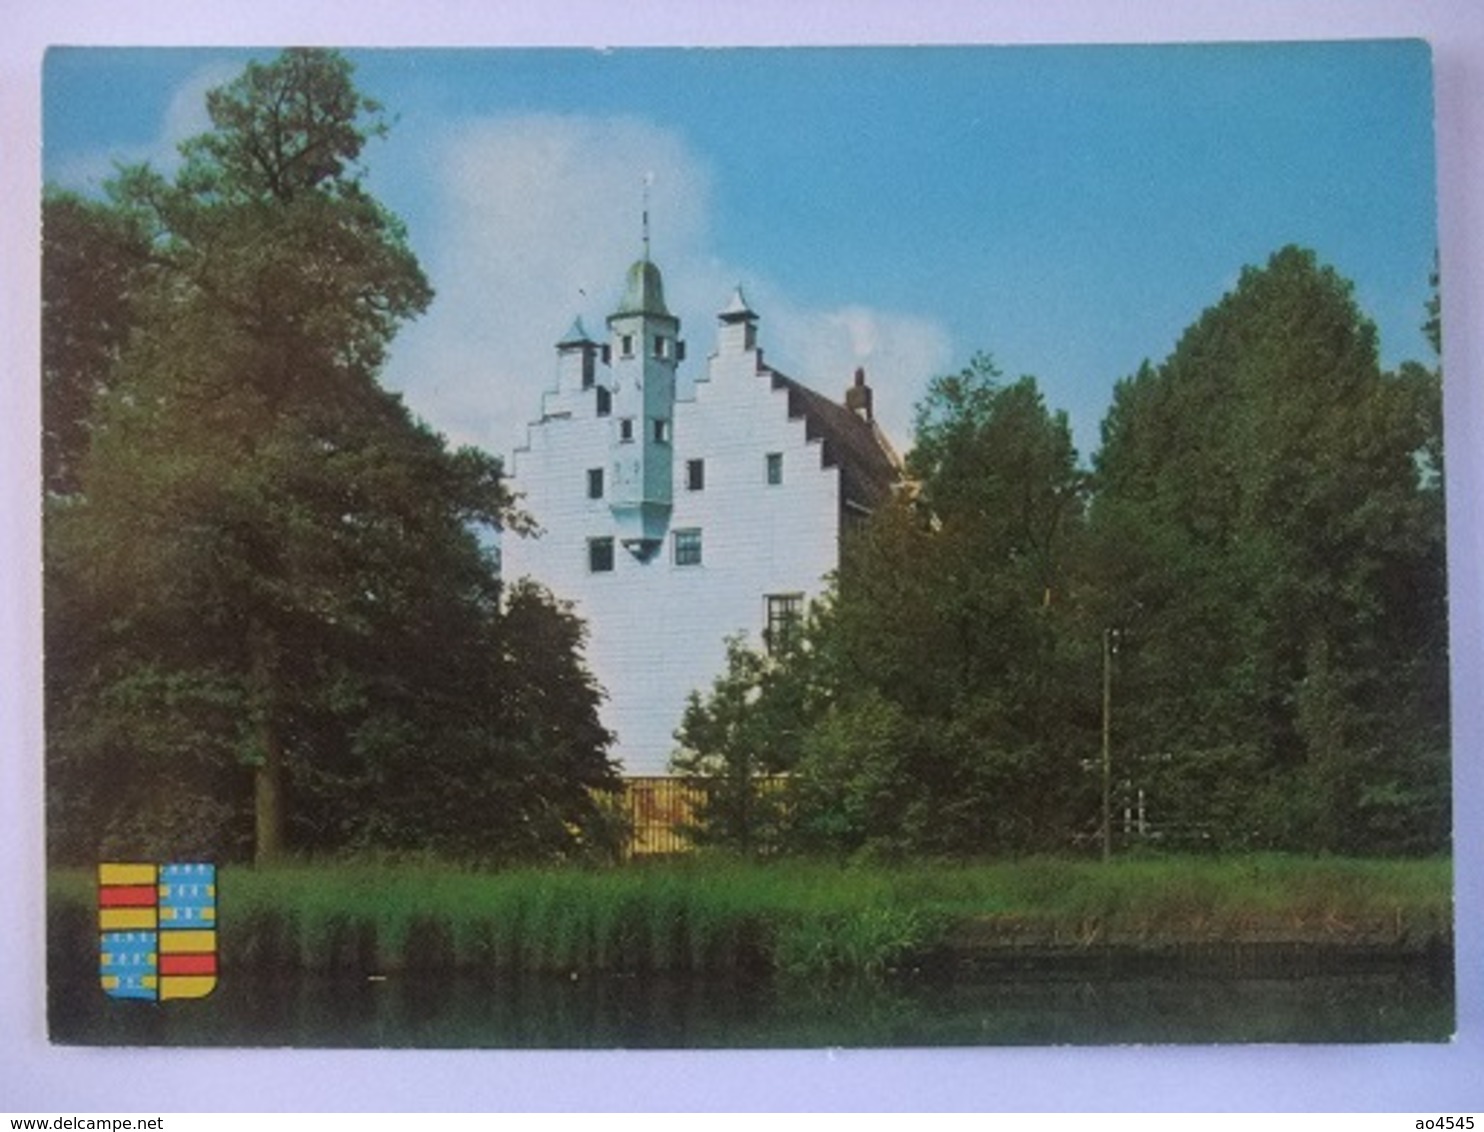 N26 Ansichtkaart Breukelen - Oudaen - 1968 - Breukelen